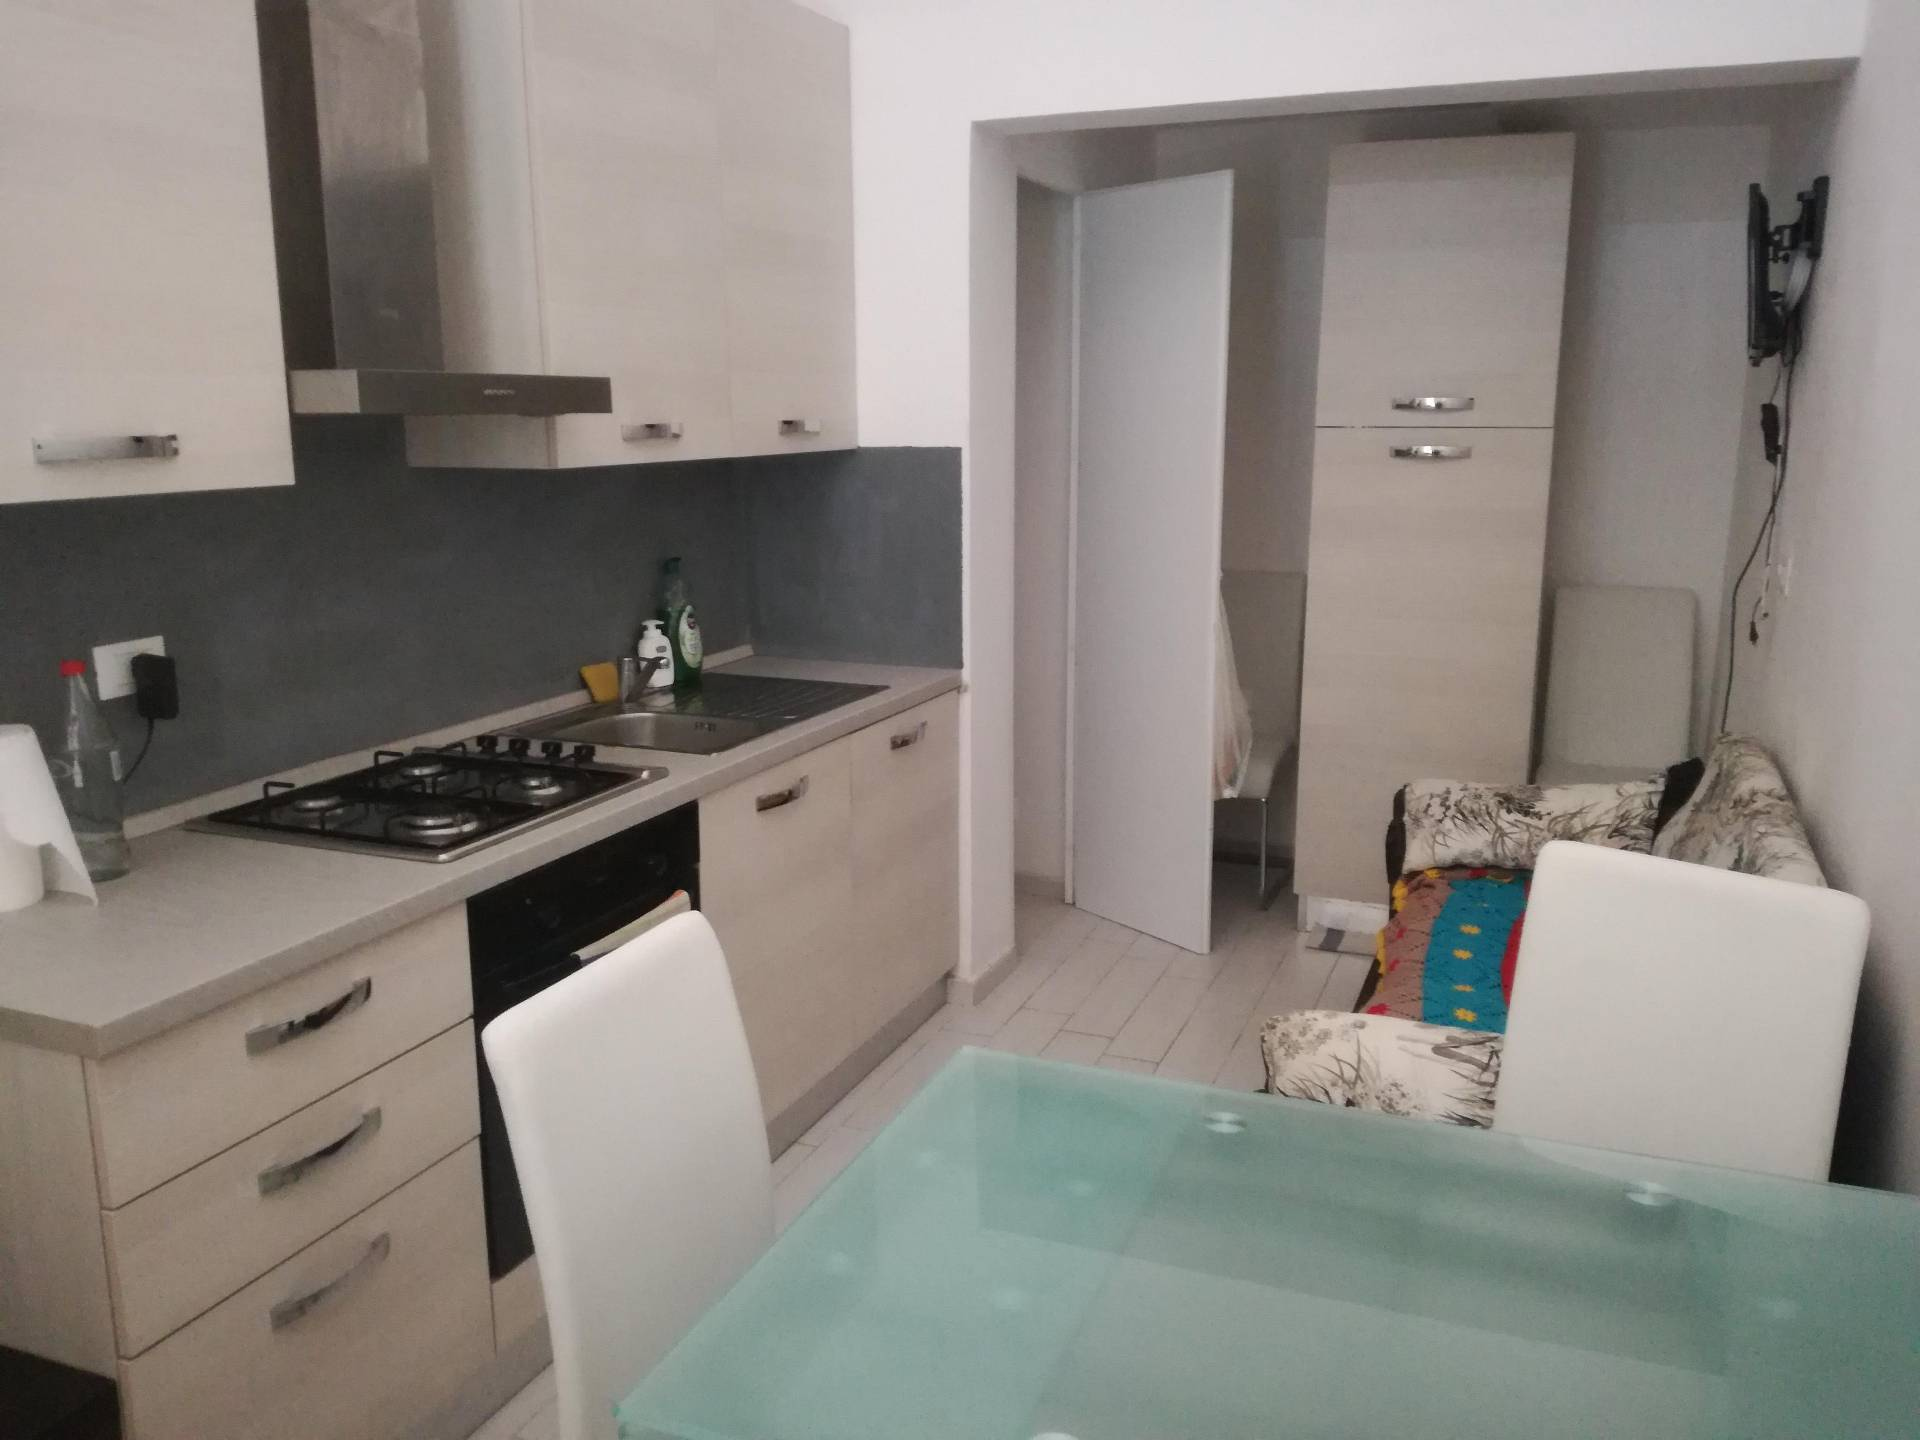 Appartamento in affitto a Ozzano Monferrato, 2 locali, prezzo € 280 | PortaleAgenzieImmobiliari.it